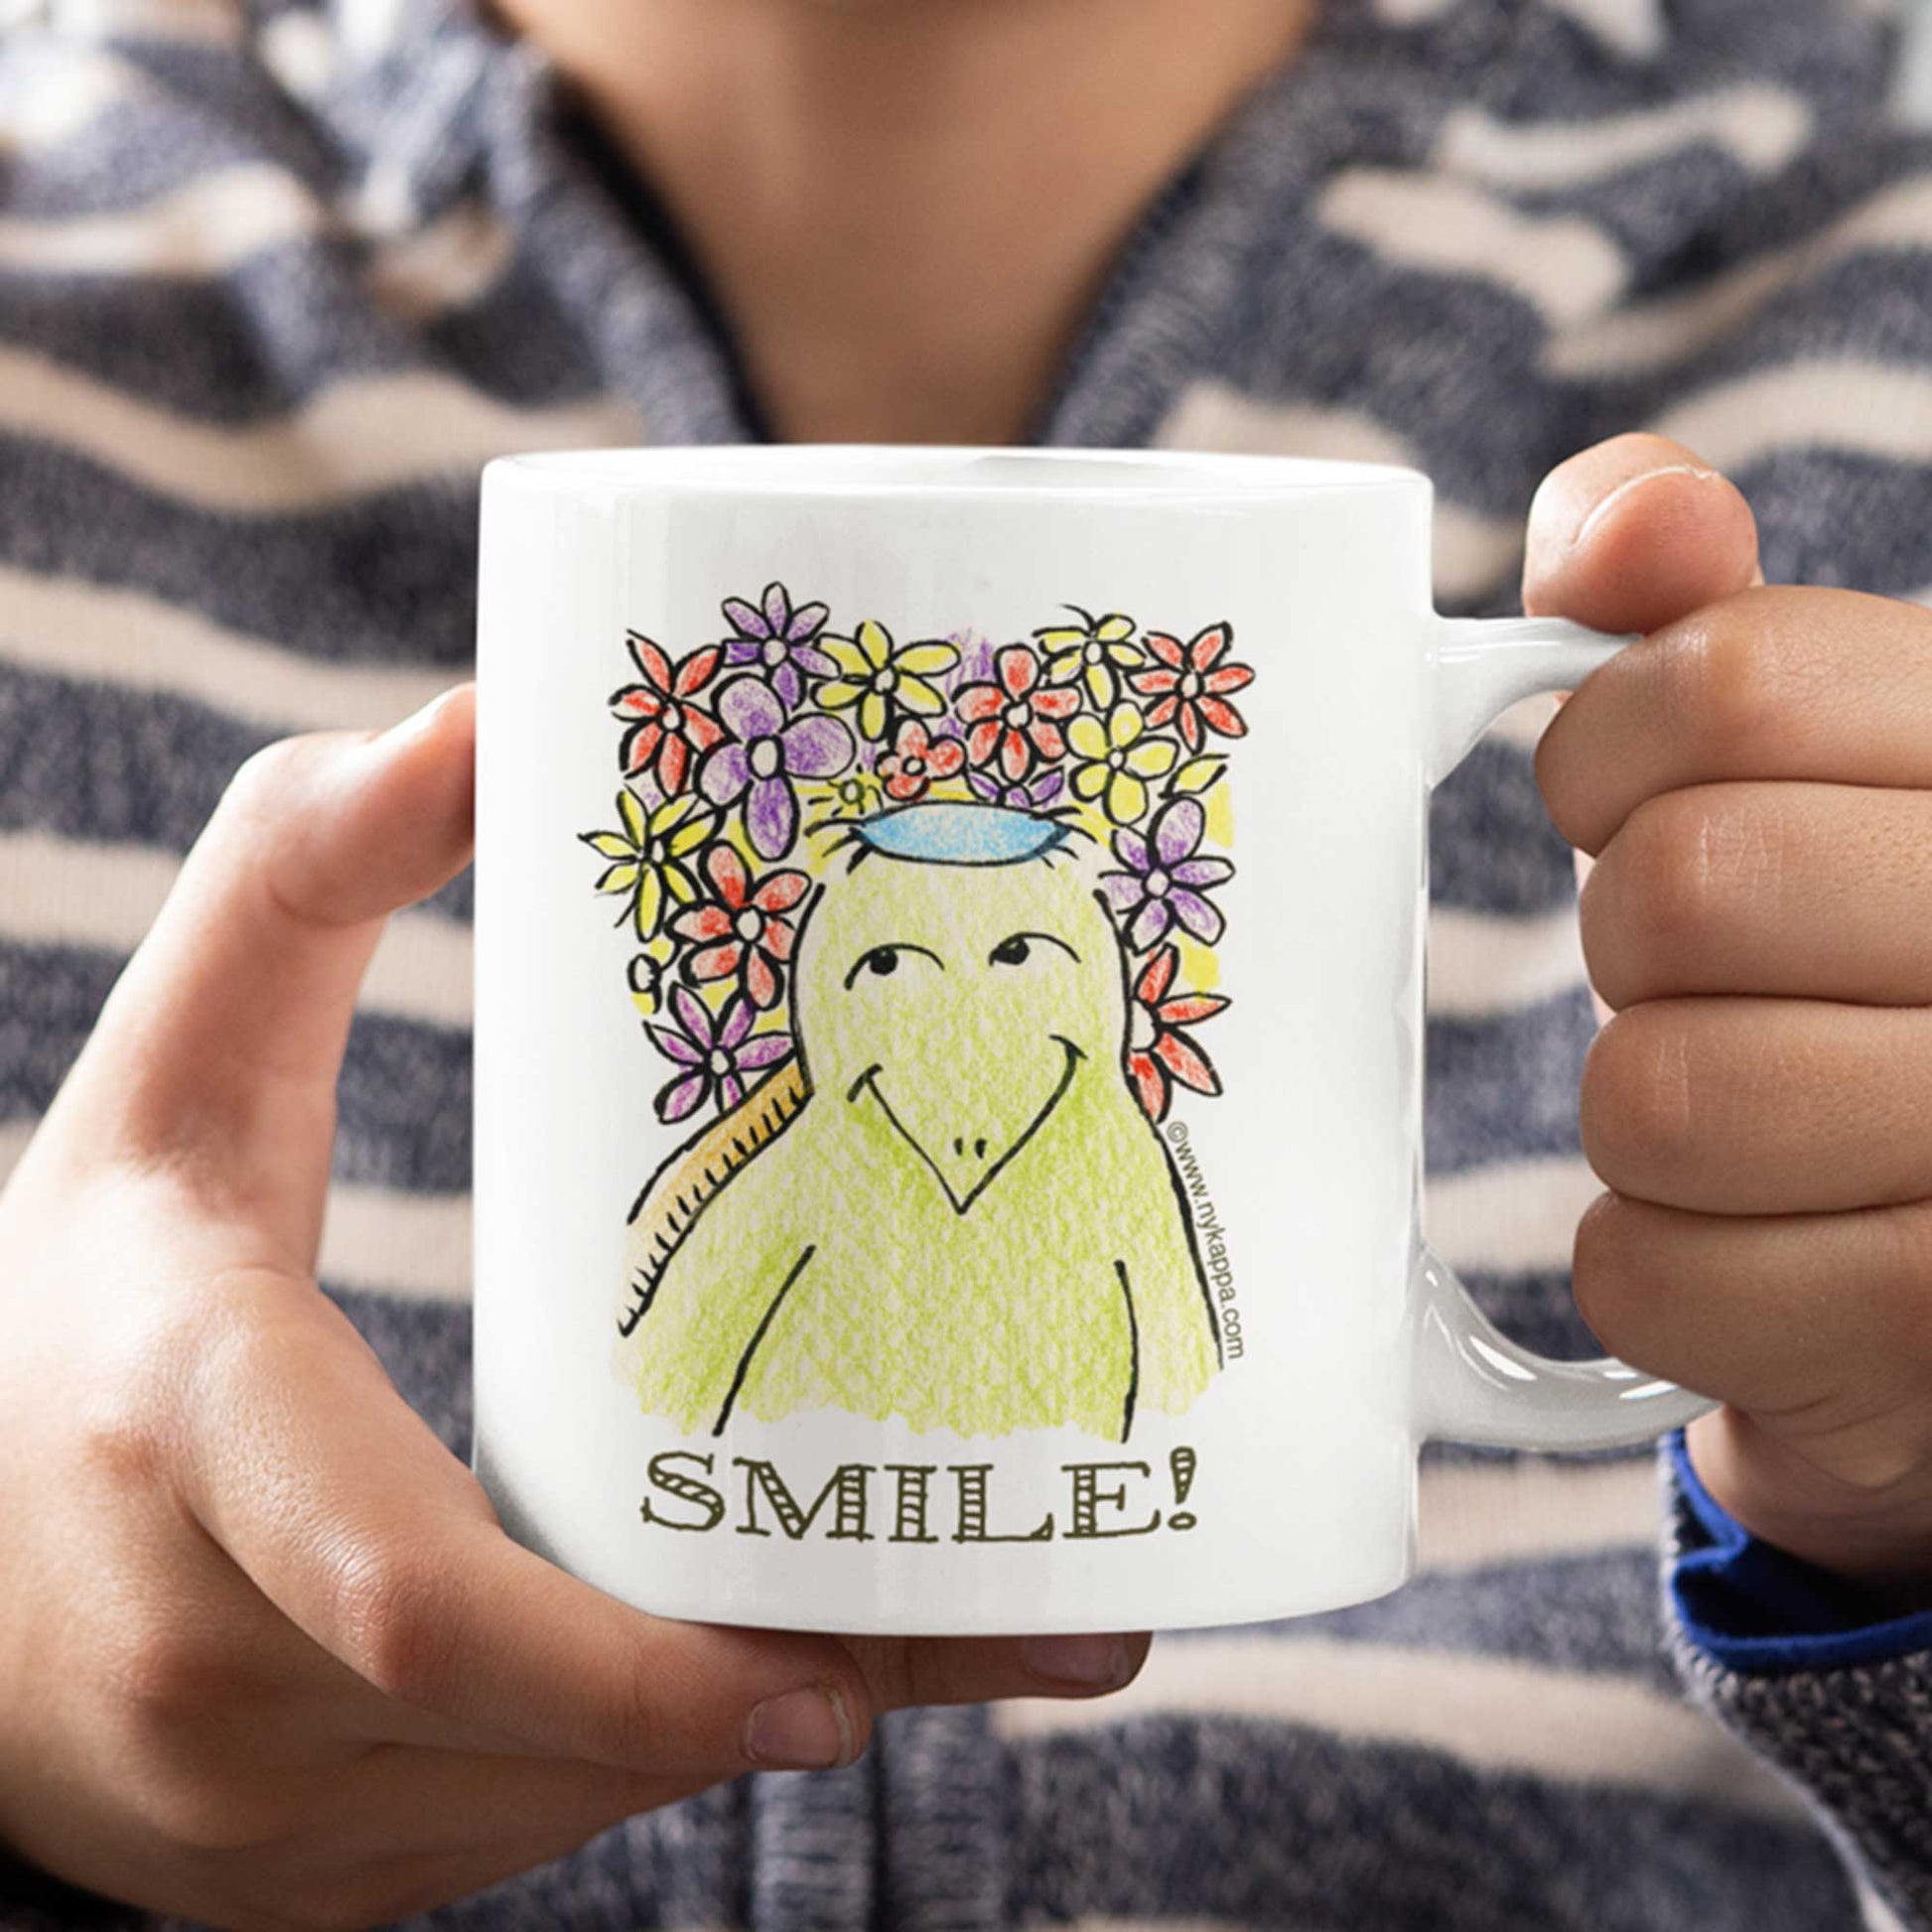 かわいいな NYのカッパ "SMILE!" NYの河童 かっぱ コーヒー マグカップ NY Kappa Smile Coffee Mug Cup 